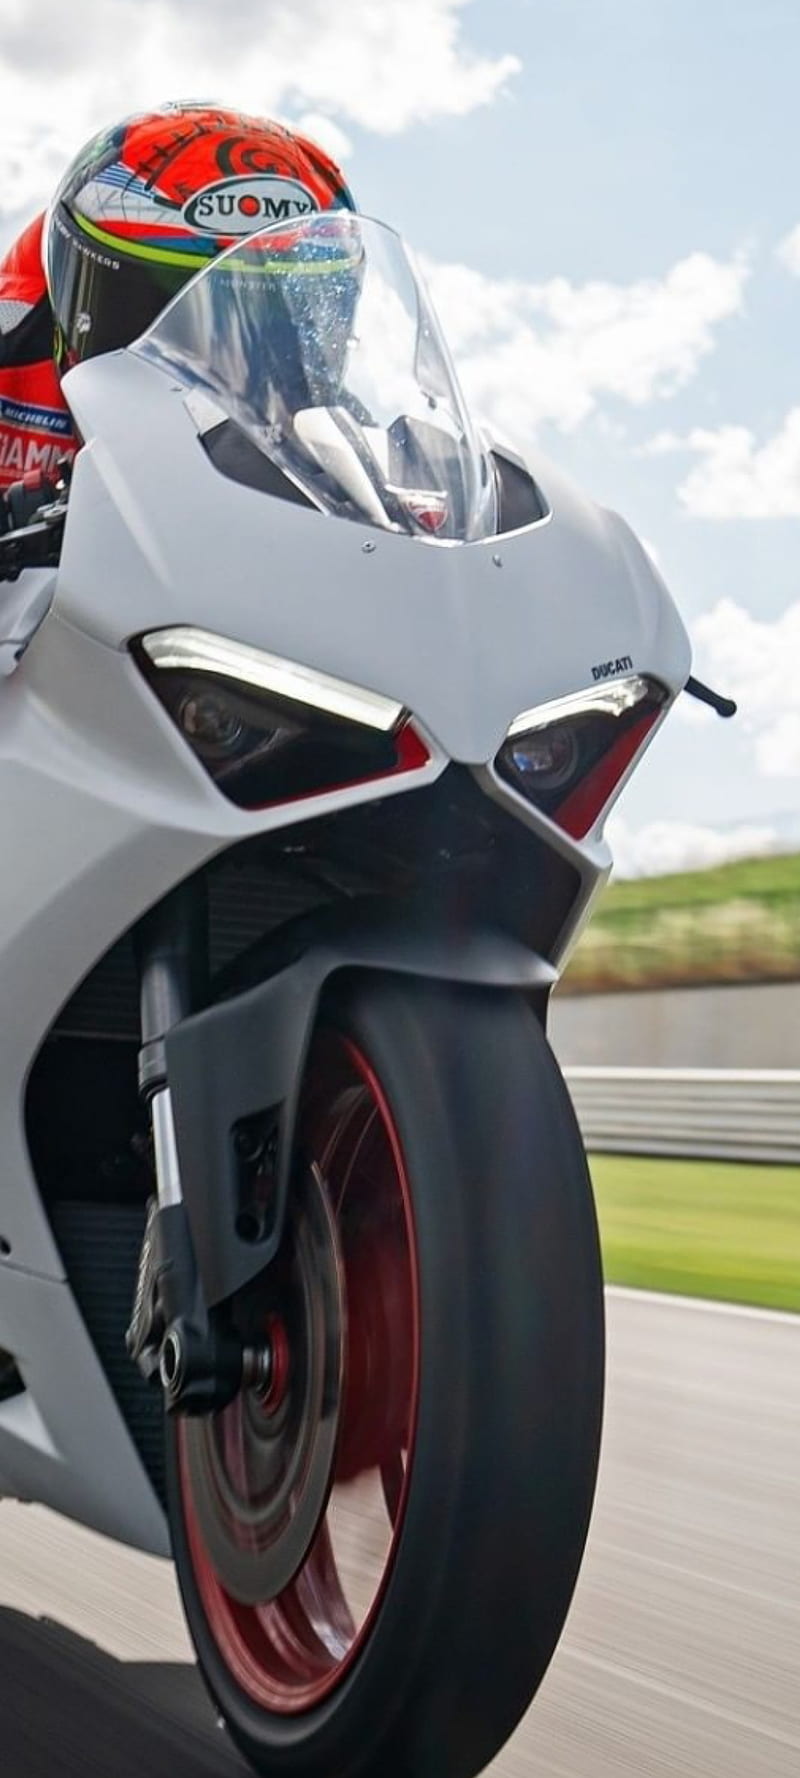 Ducati Bike Super Hd Mobile Wallpaper Peakpx